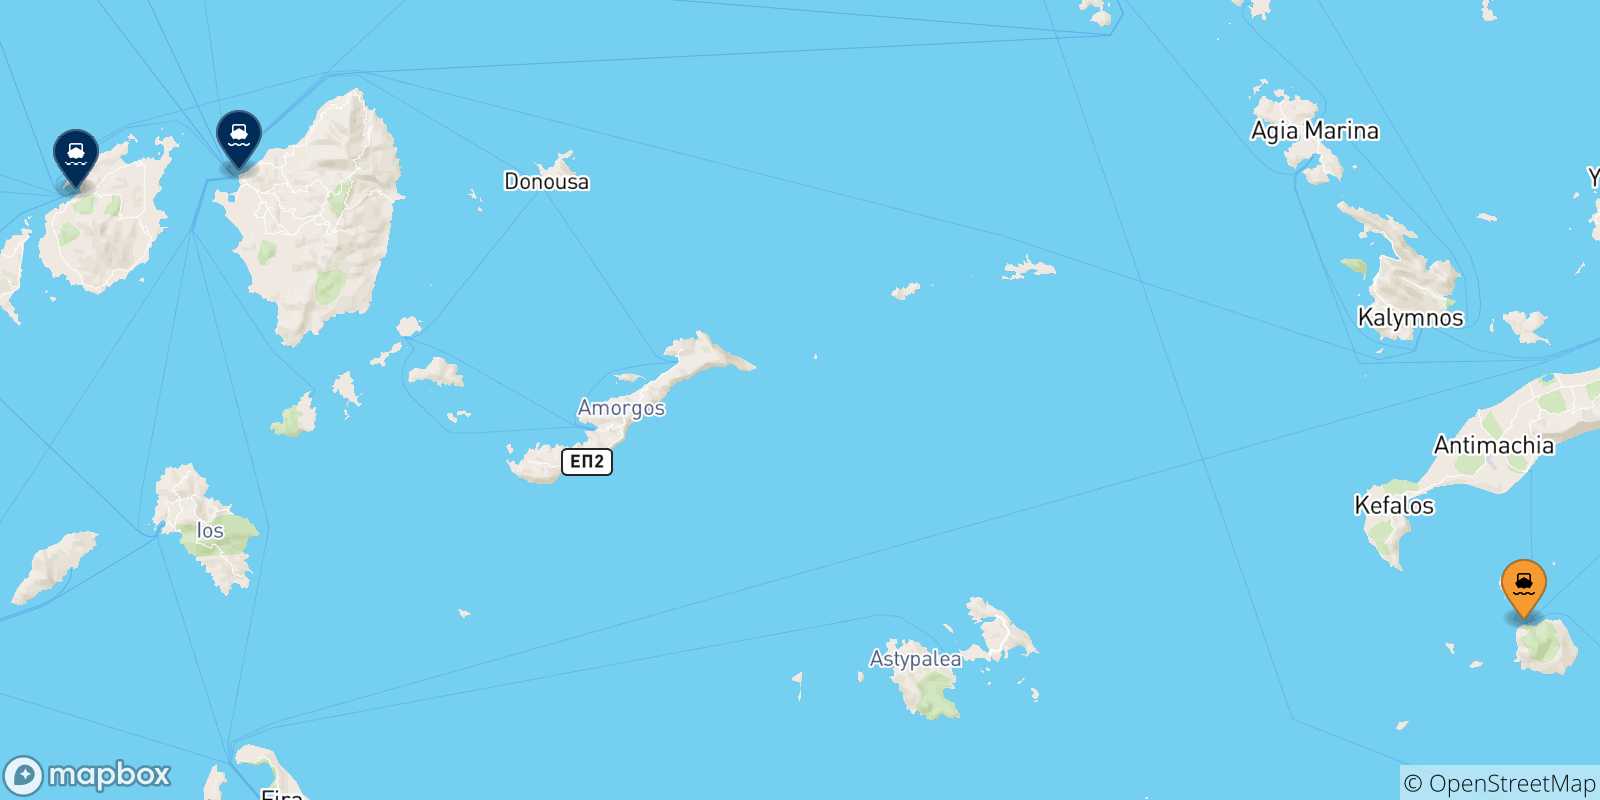 Mappa delle possibili rotte tra Nisyros e le Isole Cicladi